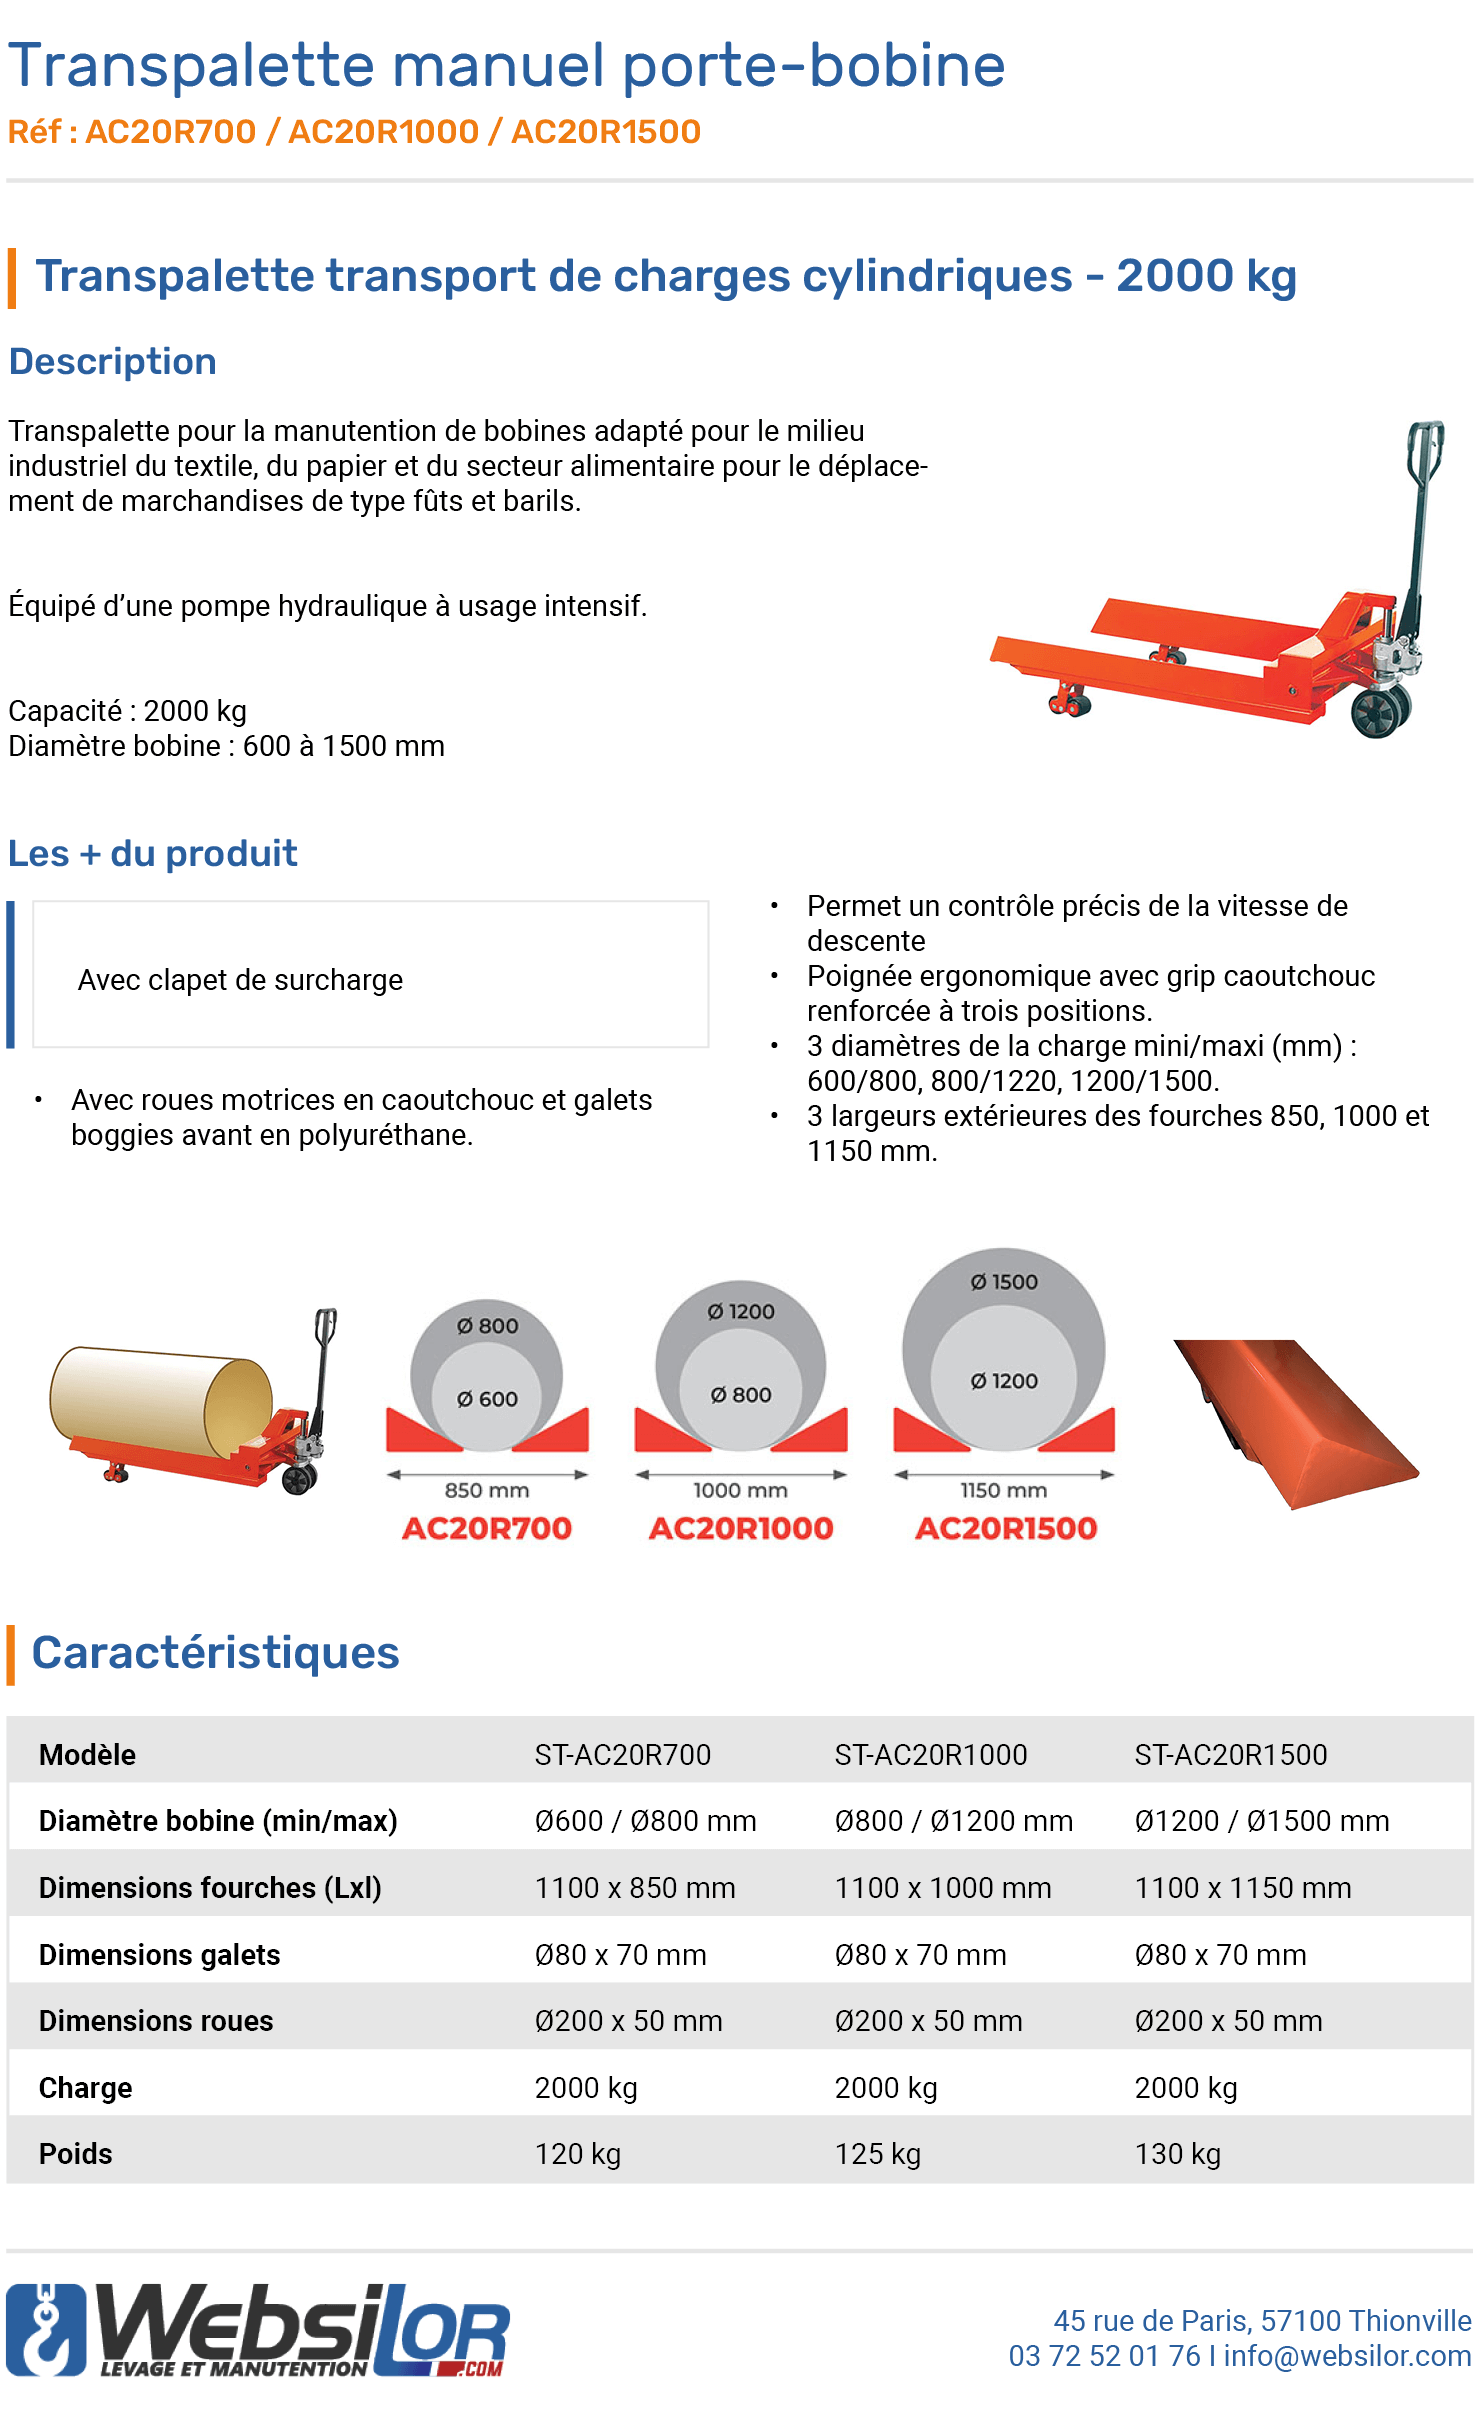 Informations techniques Transpalette manuel porte-bobine